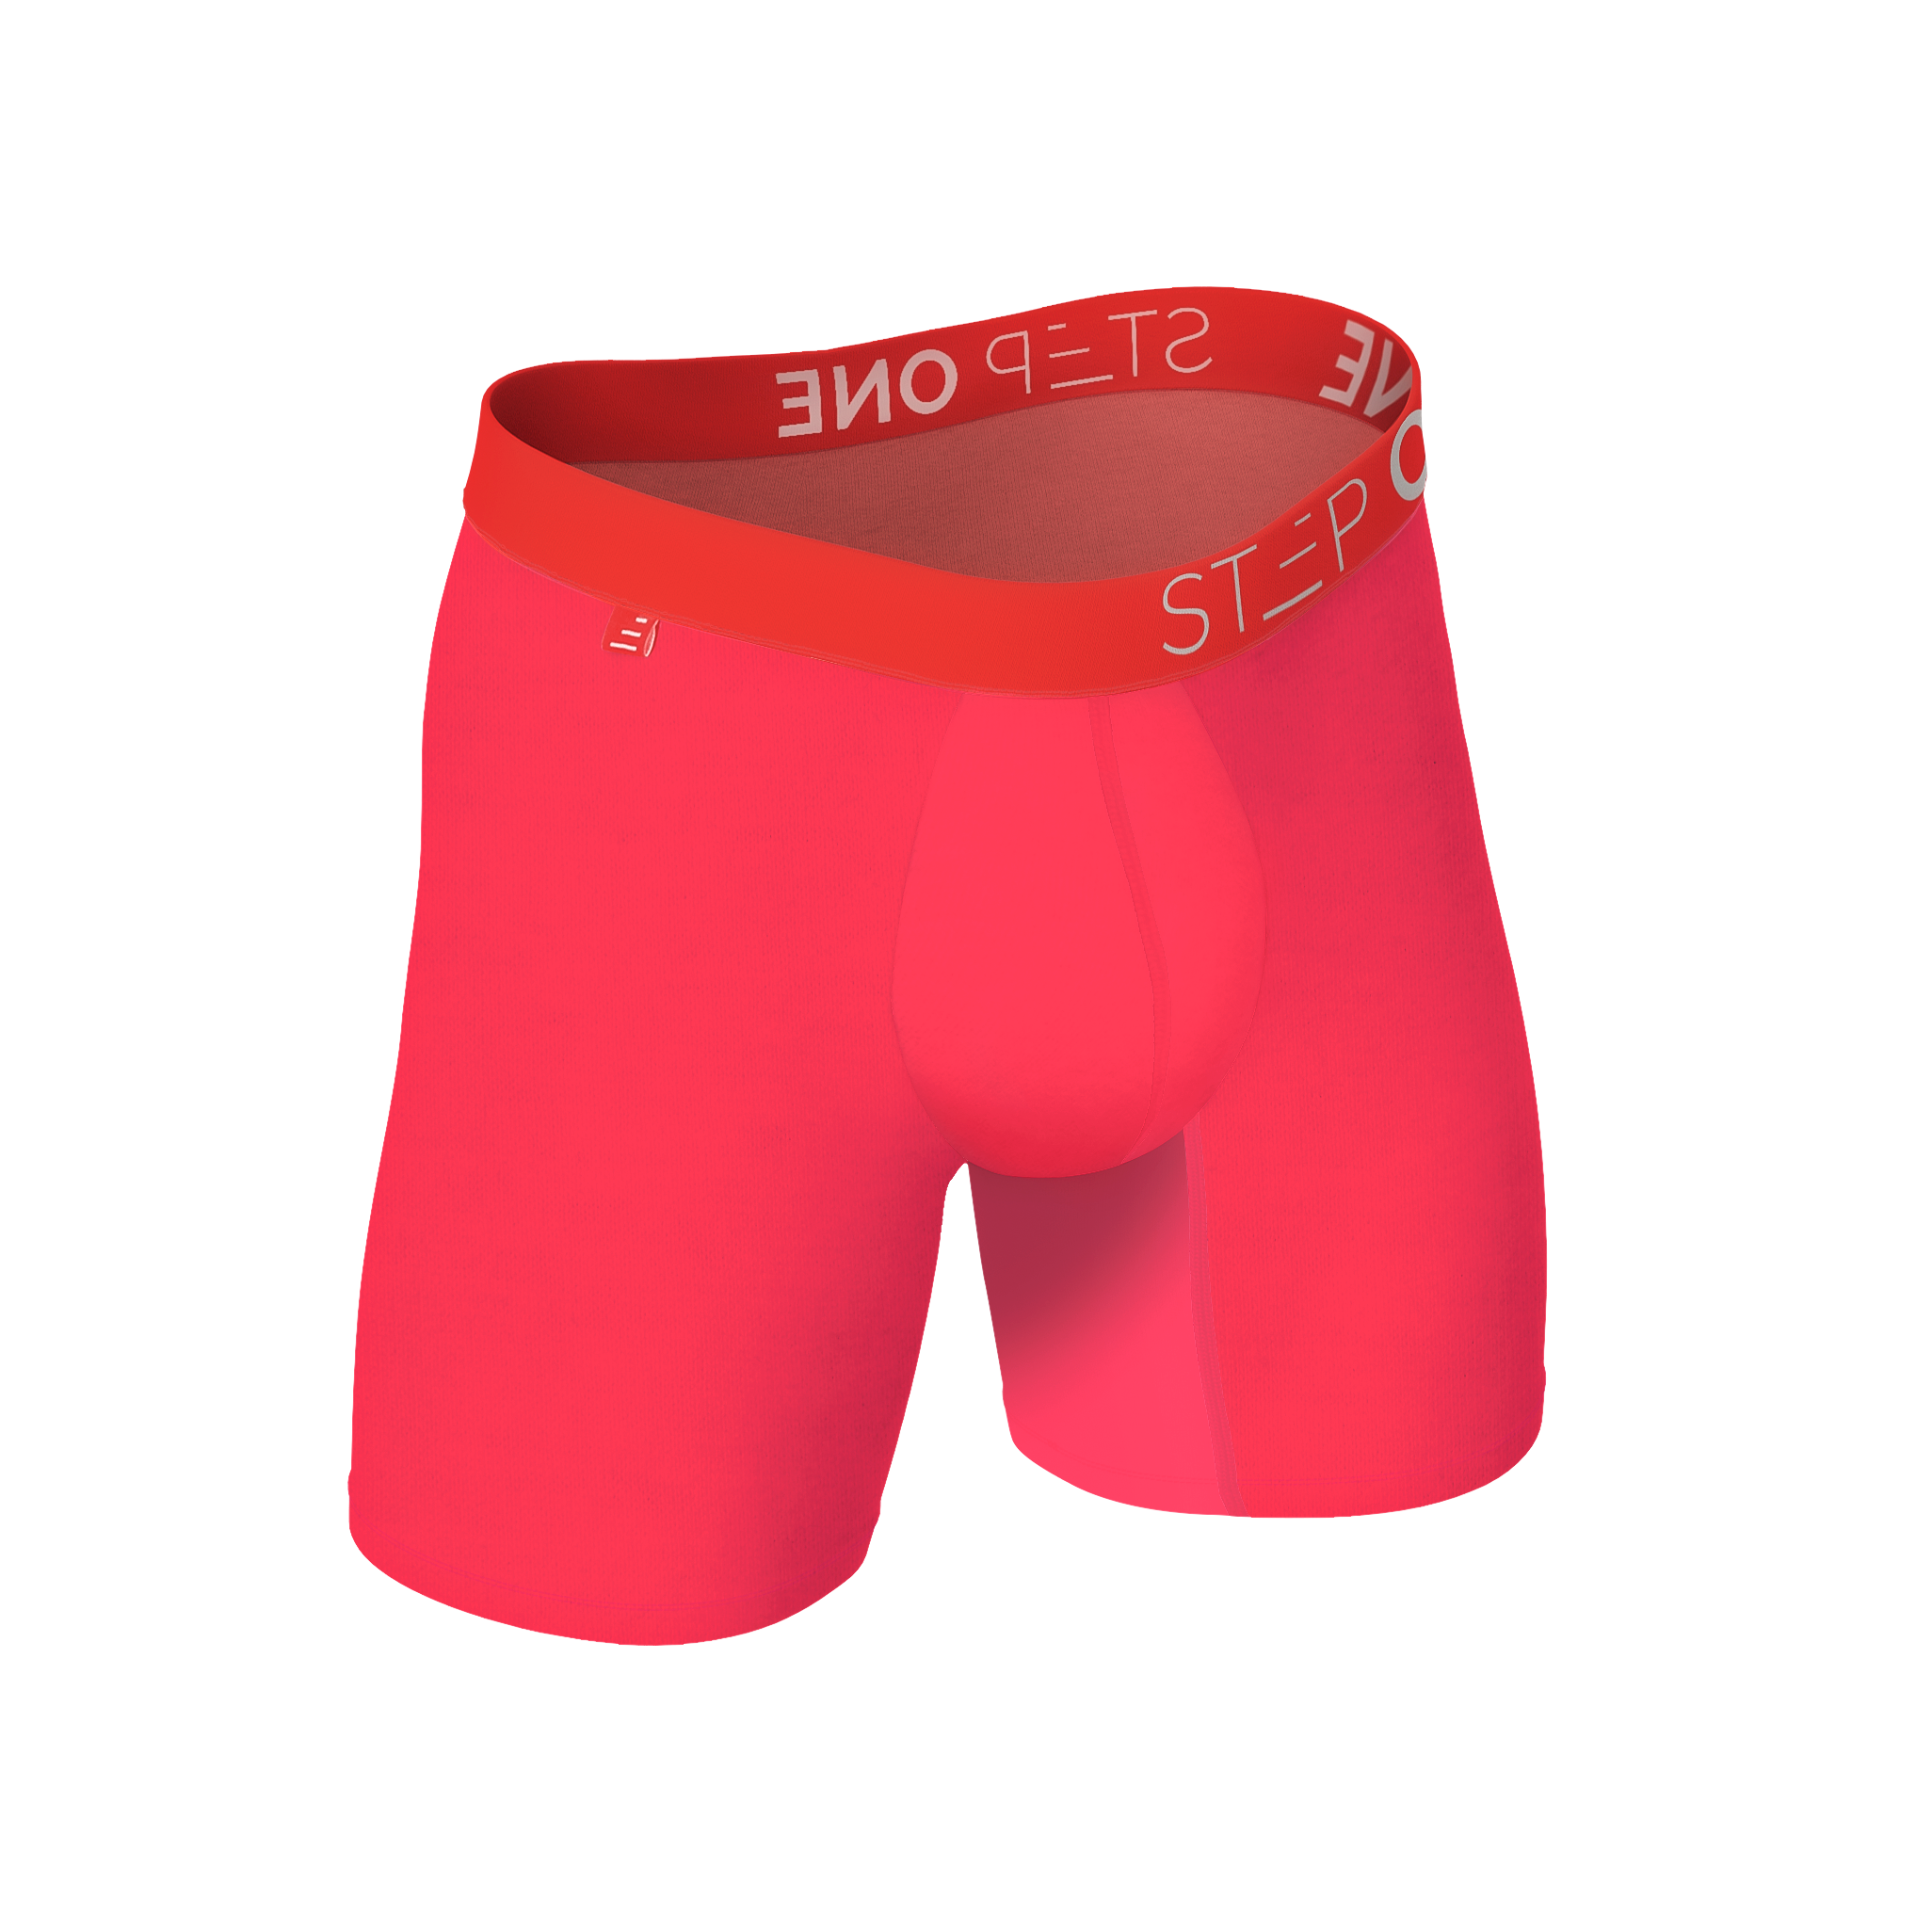 Boxer Brief - Hot Sauce  Step One Men's Underwear US